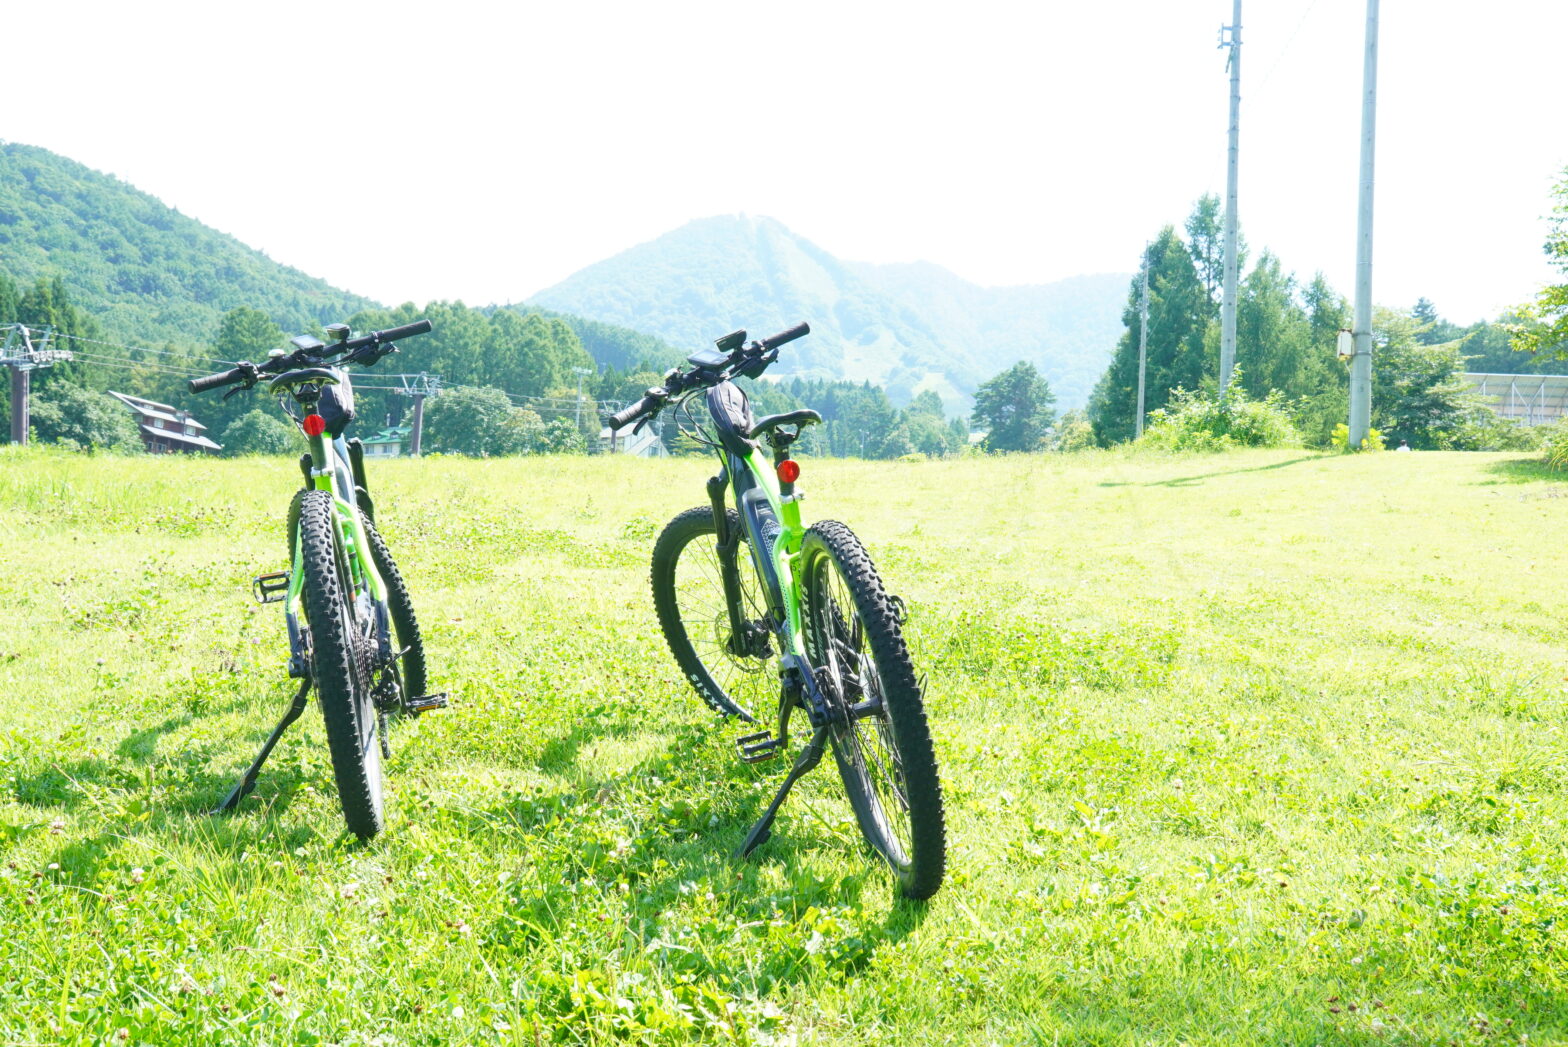 木島平村観光振興局でレンタルするマウンテンバイクタイプのE-bike